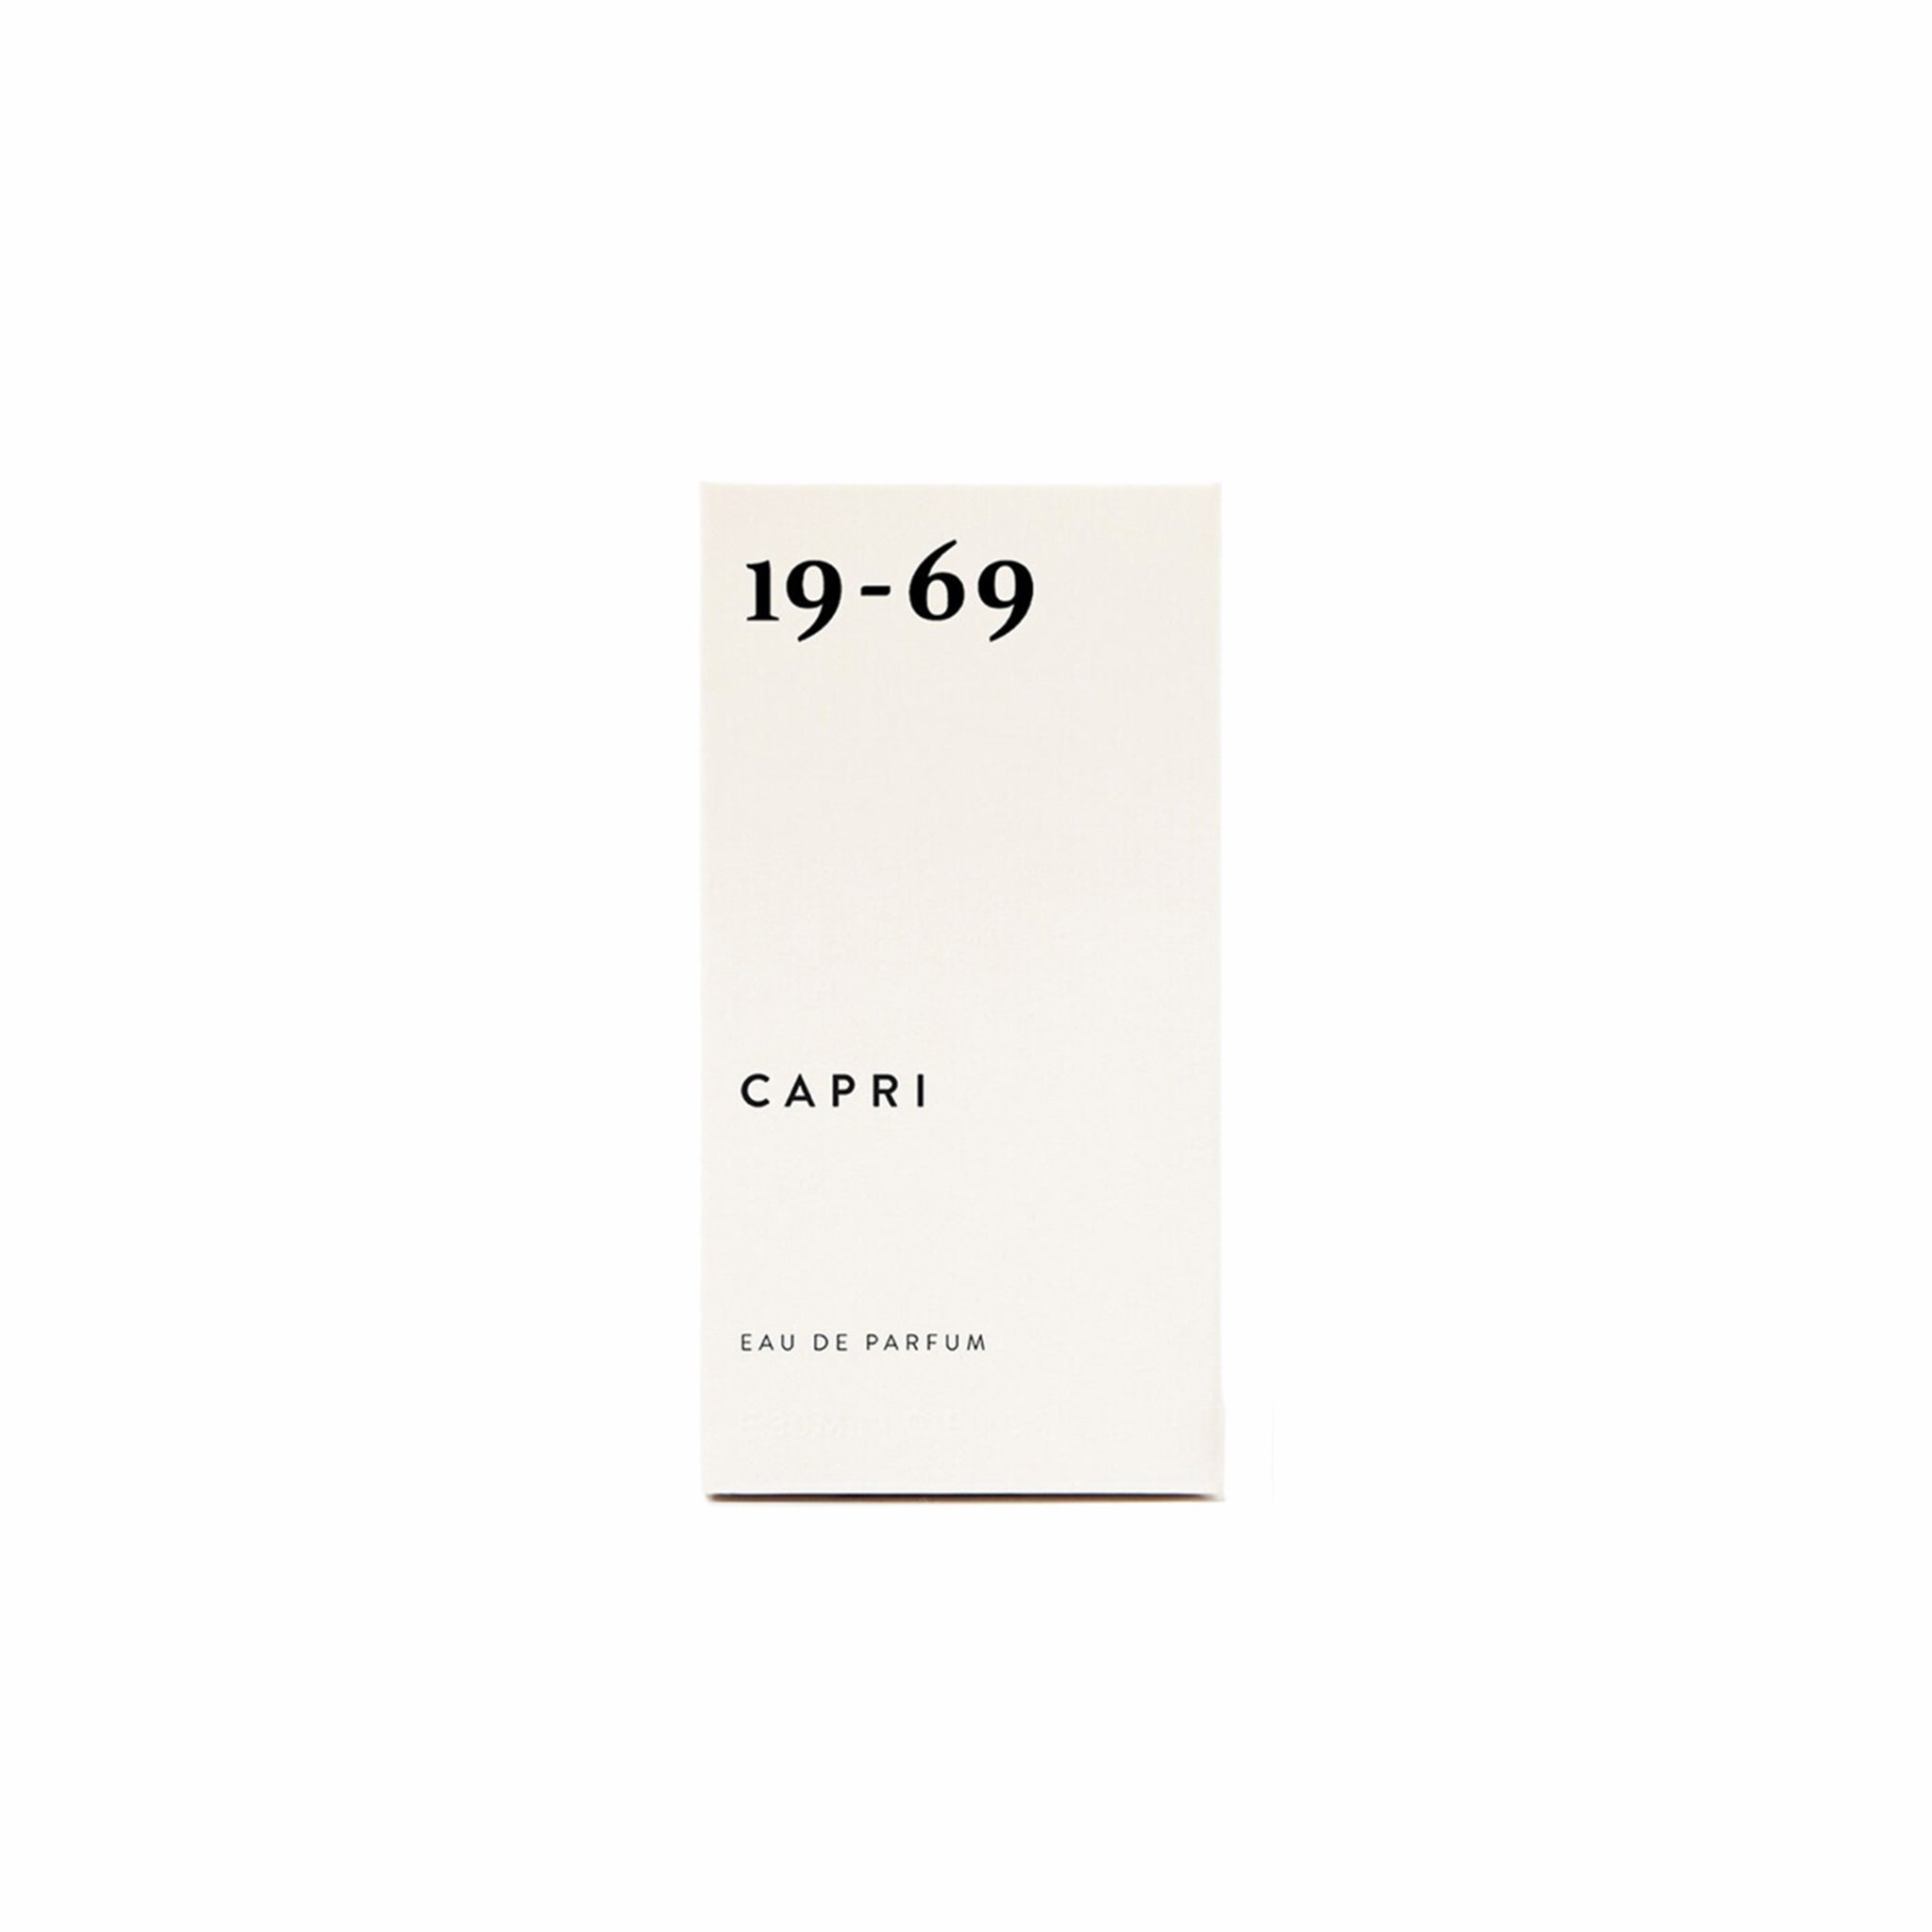 19-69, 19-69 Capri Eau de Parfum (30mL)